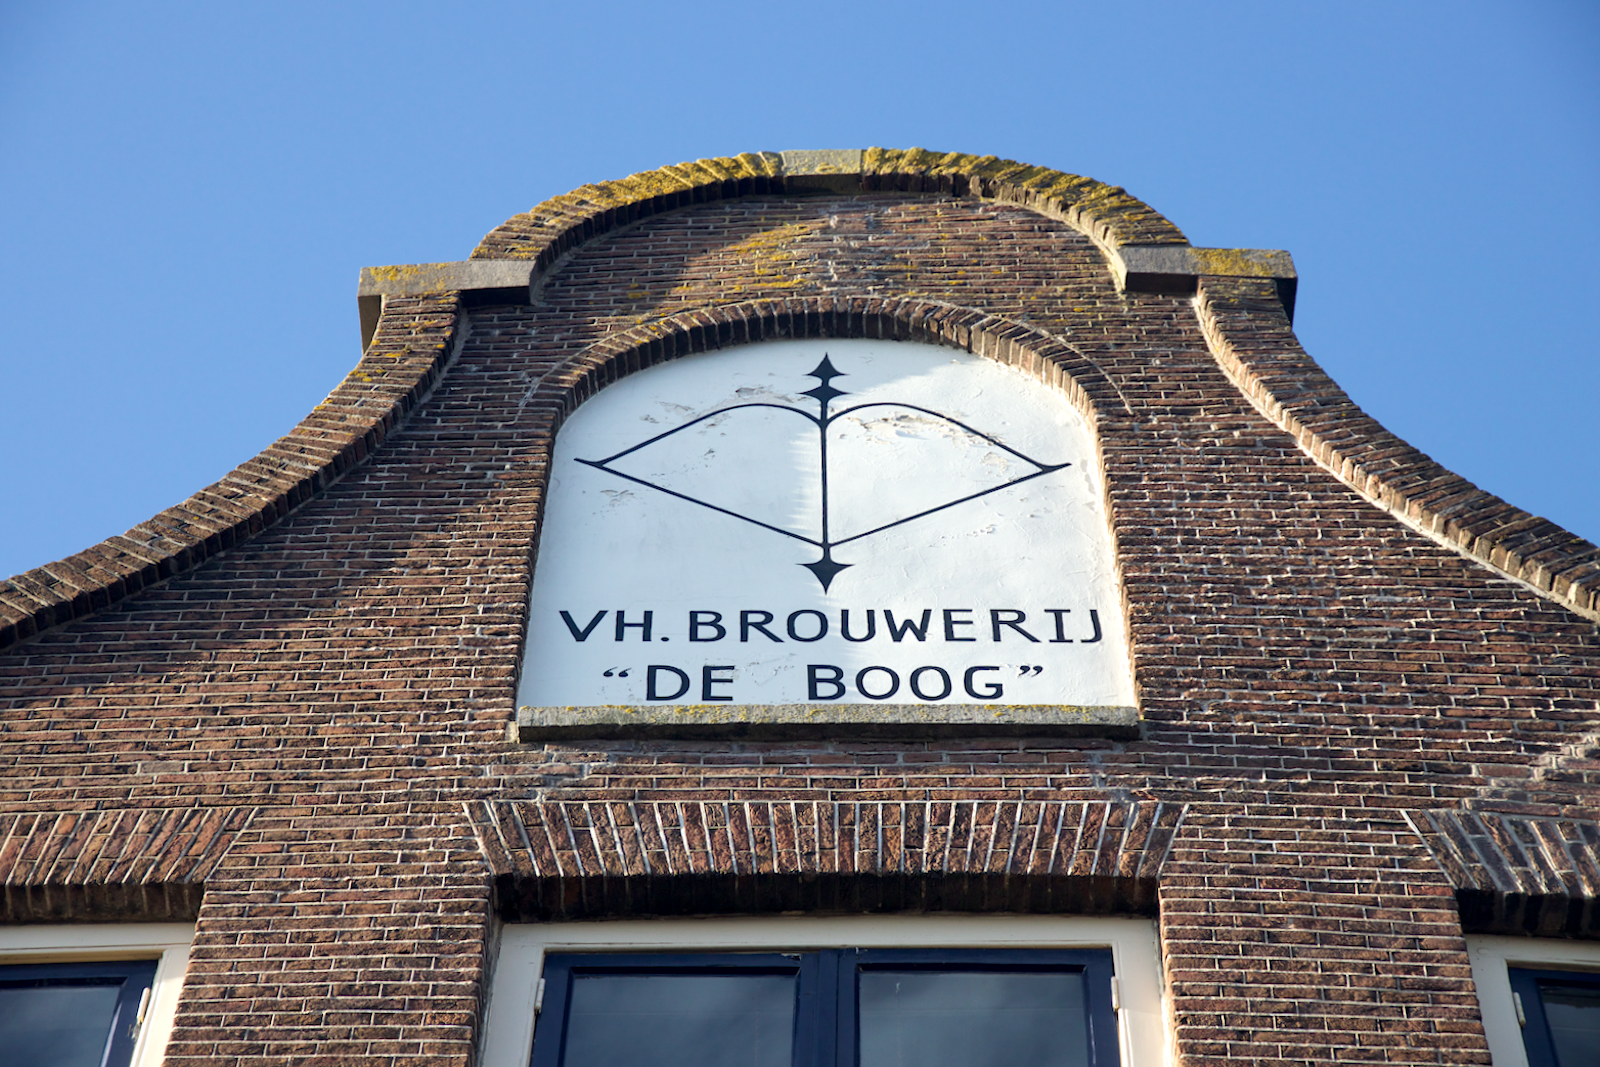 Gevel van voormalig Utrechtse brouwerij De Boog